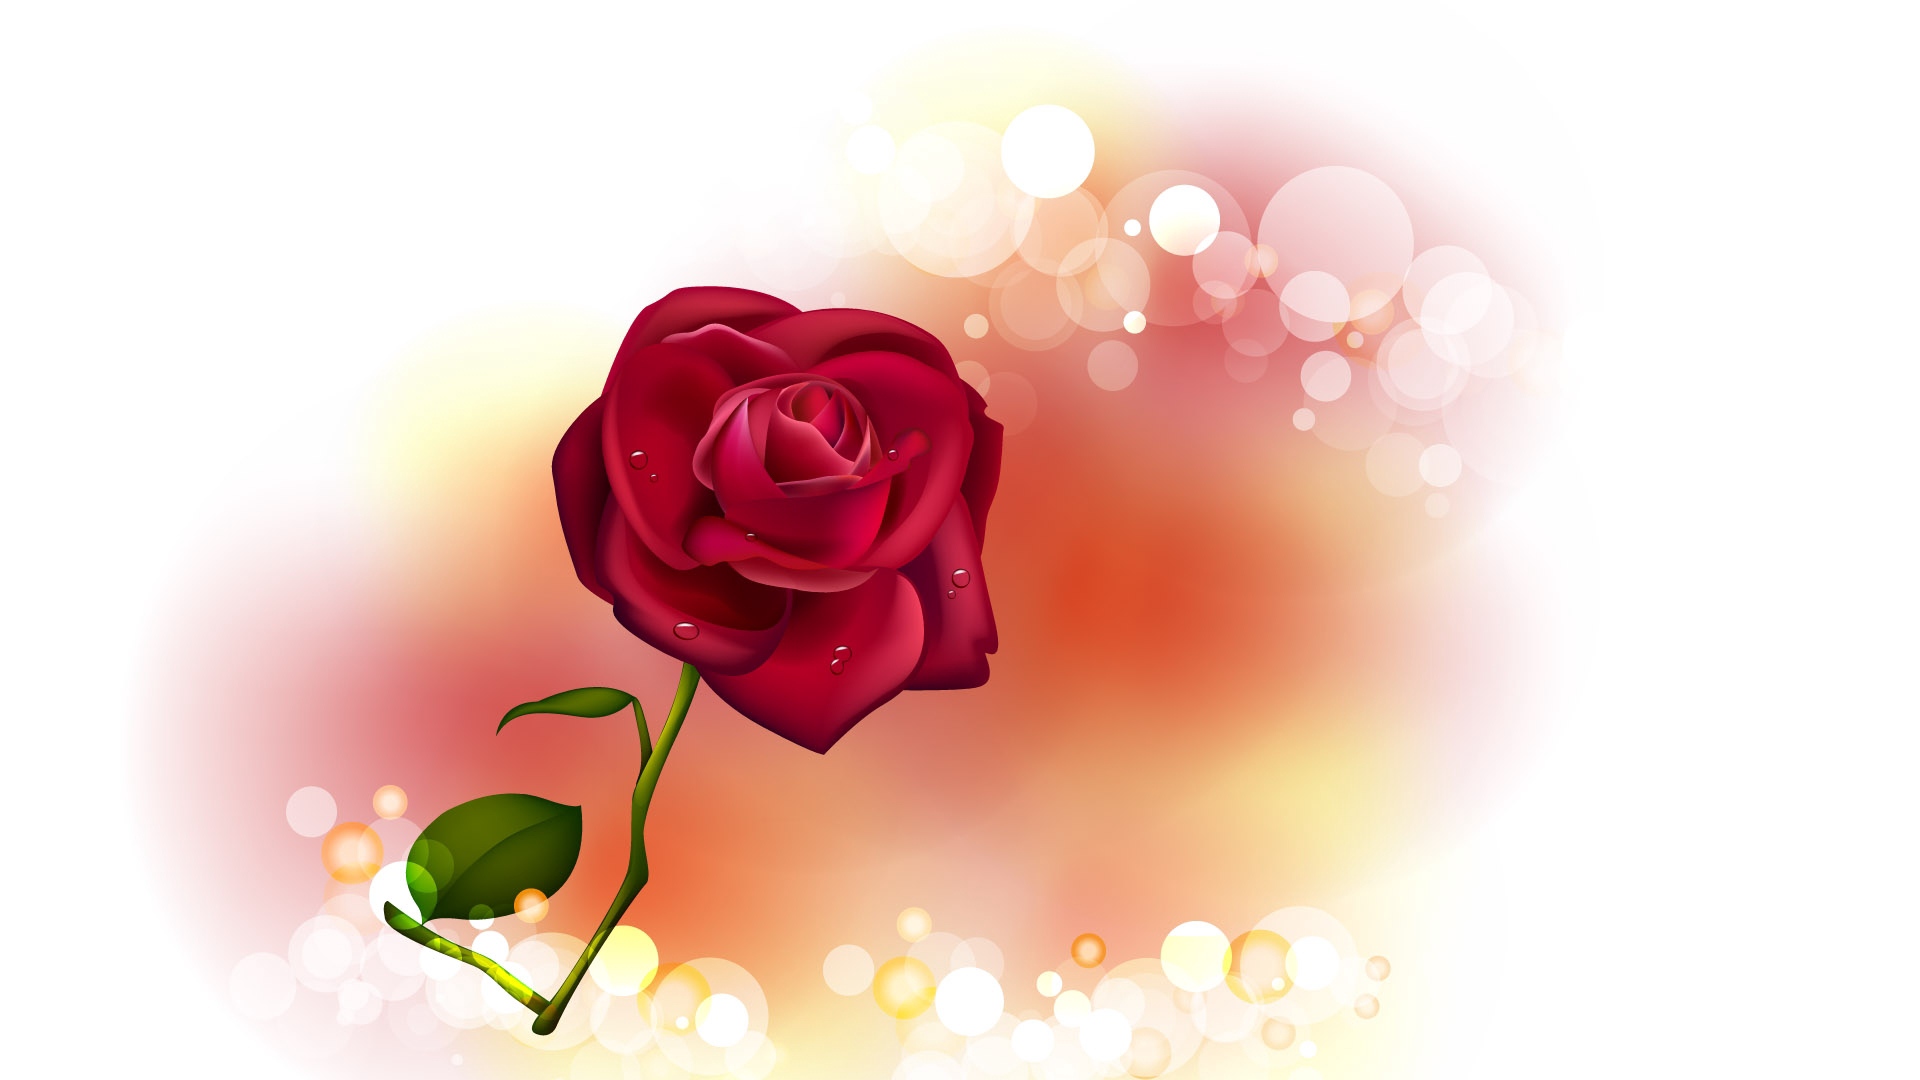 Wallpaper Rose, Flower, Glare, Light - Good Morning With Date - HD Wallpaper 